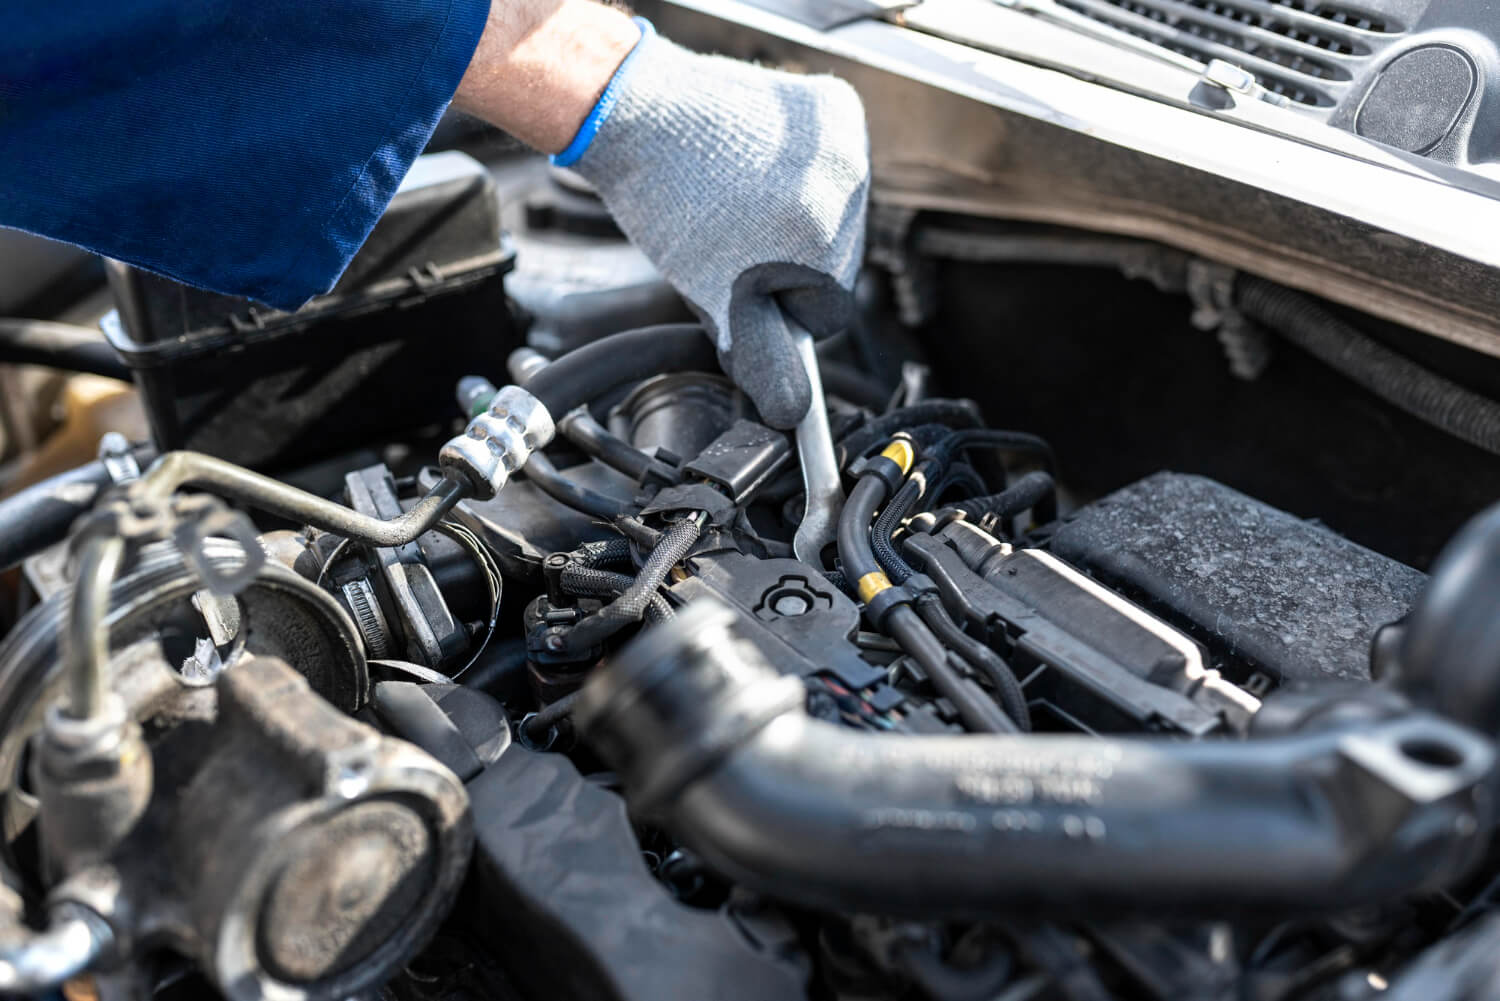 Foto de um mecânico com luvas ajustando componentes sob o capô de um carro, focando especialmente na limpeza e manutenção do bico injetor para assegurar o funcionamento seguro e eficiente do veículo.